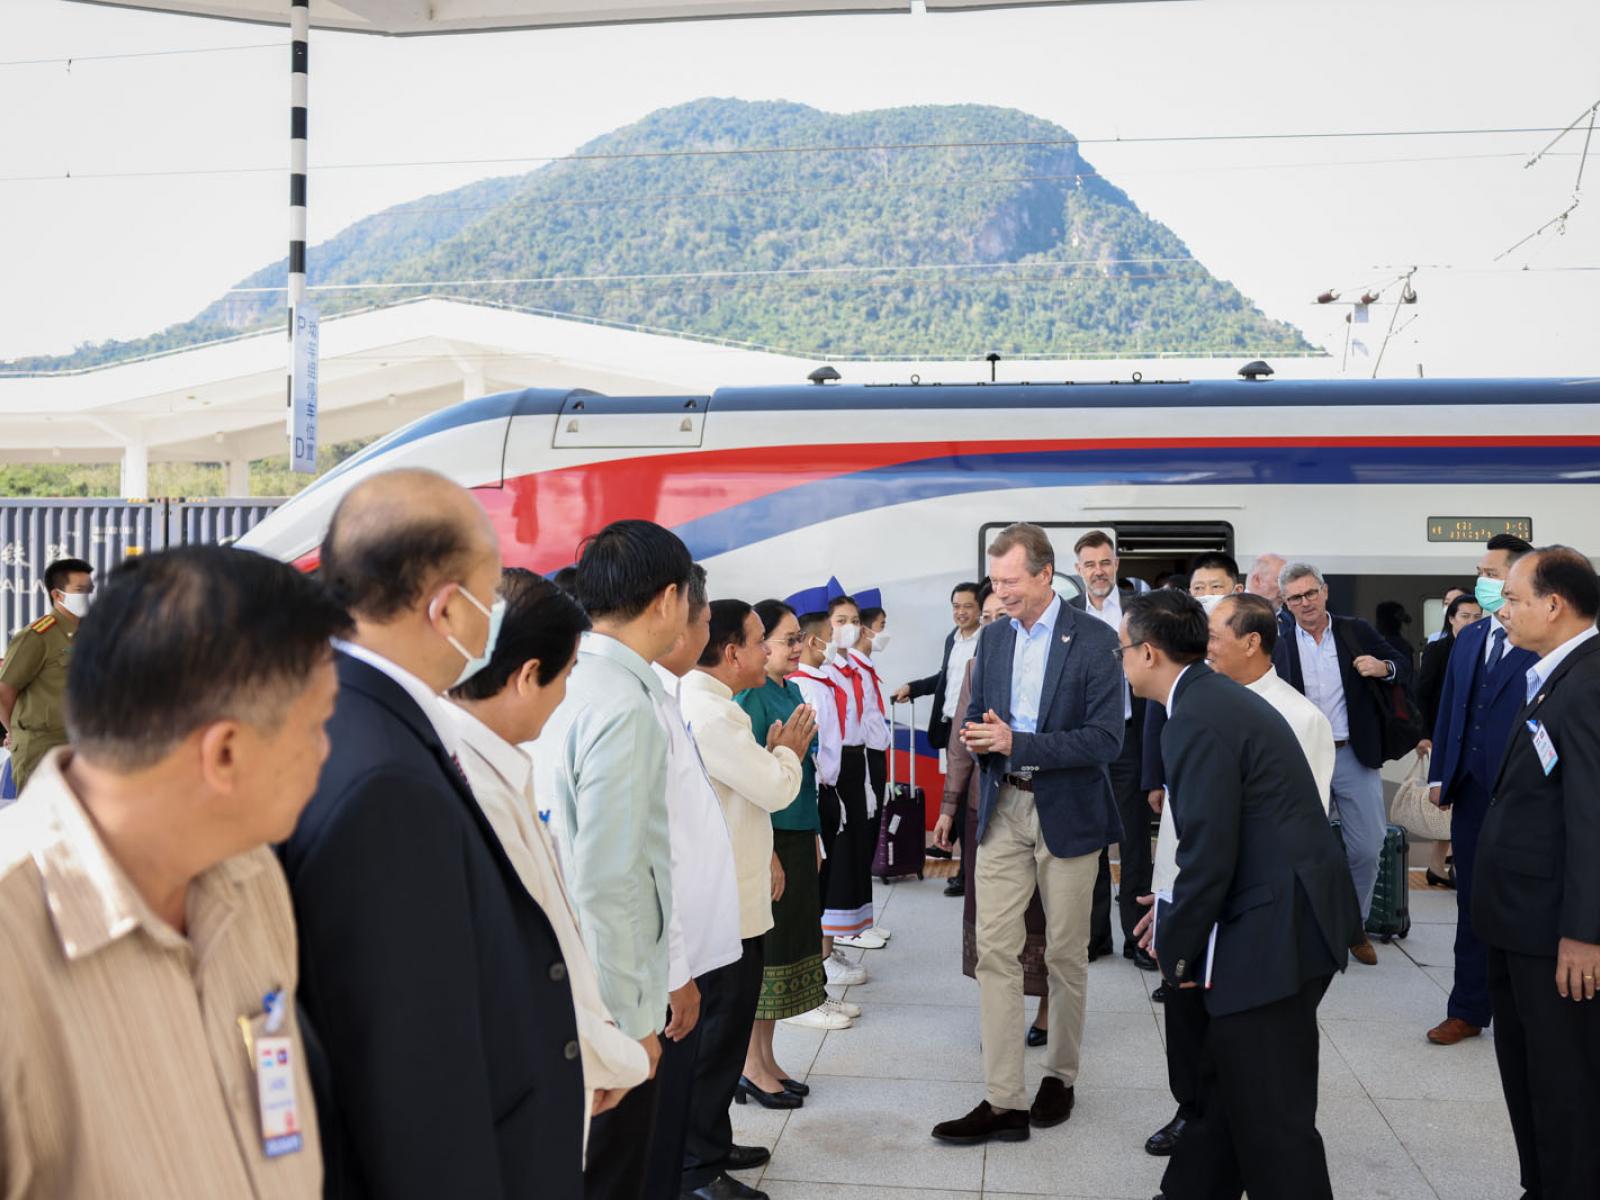 Le Grand-Duc est accueilli par la délégation lao à la descente du train